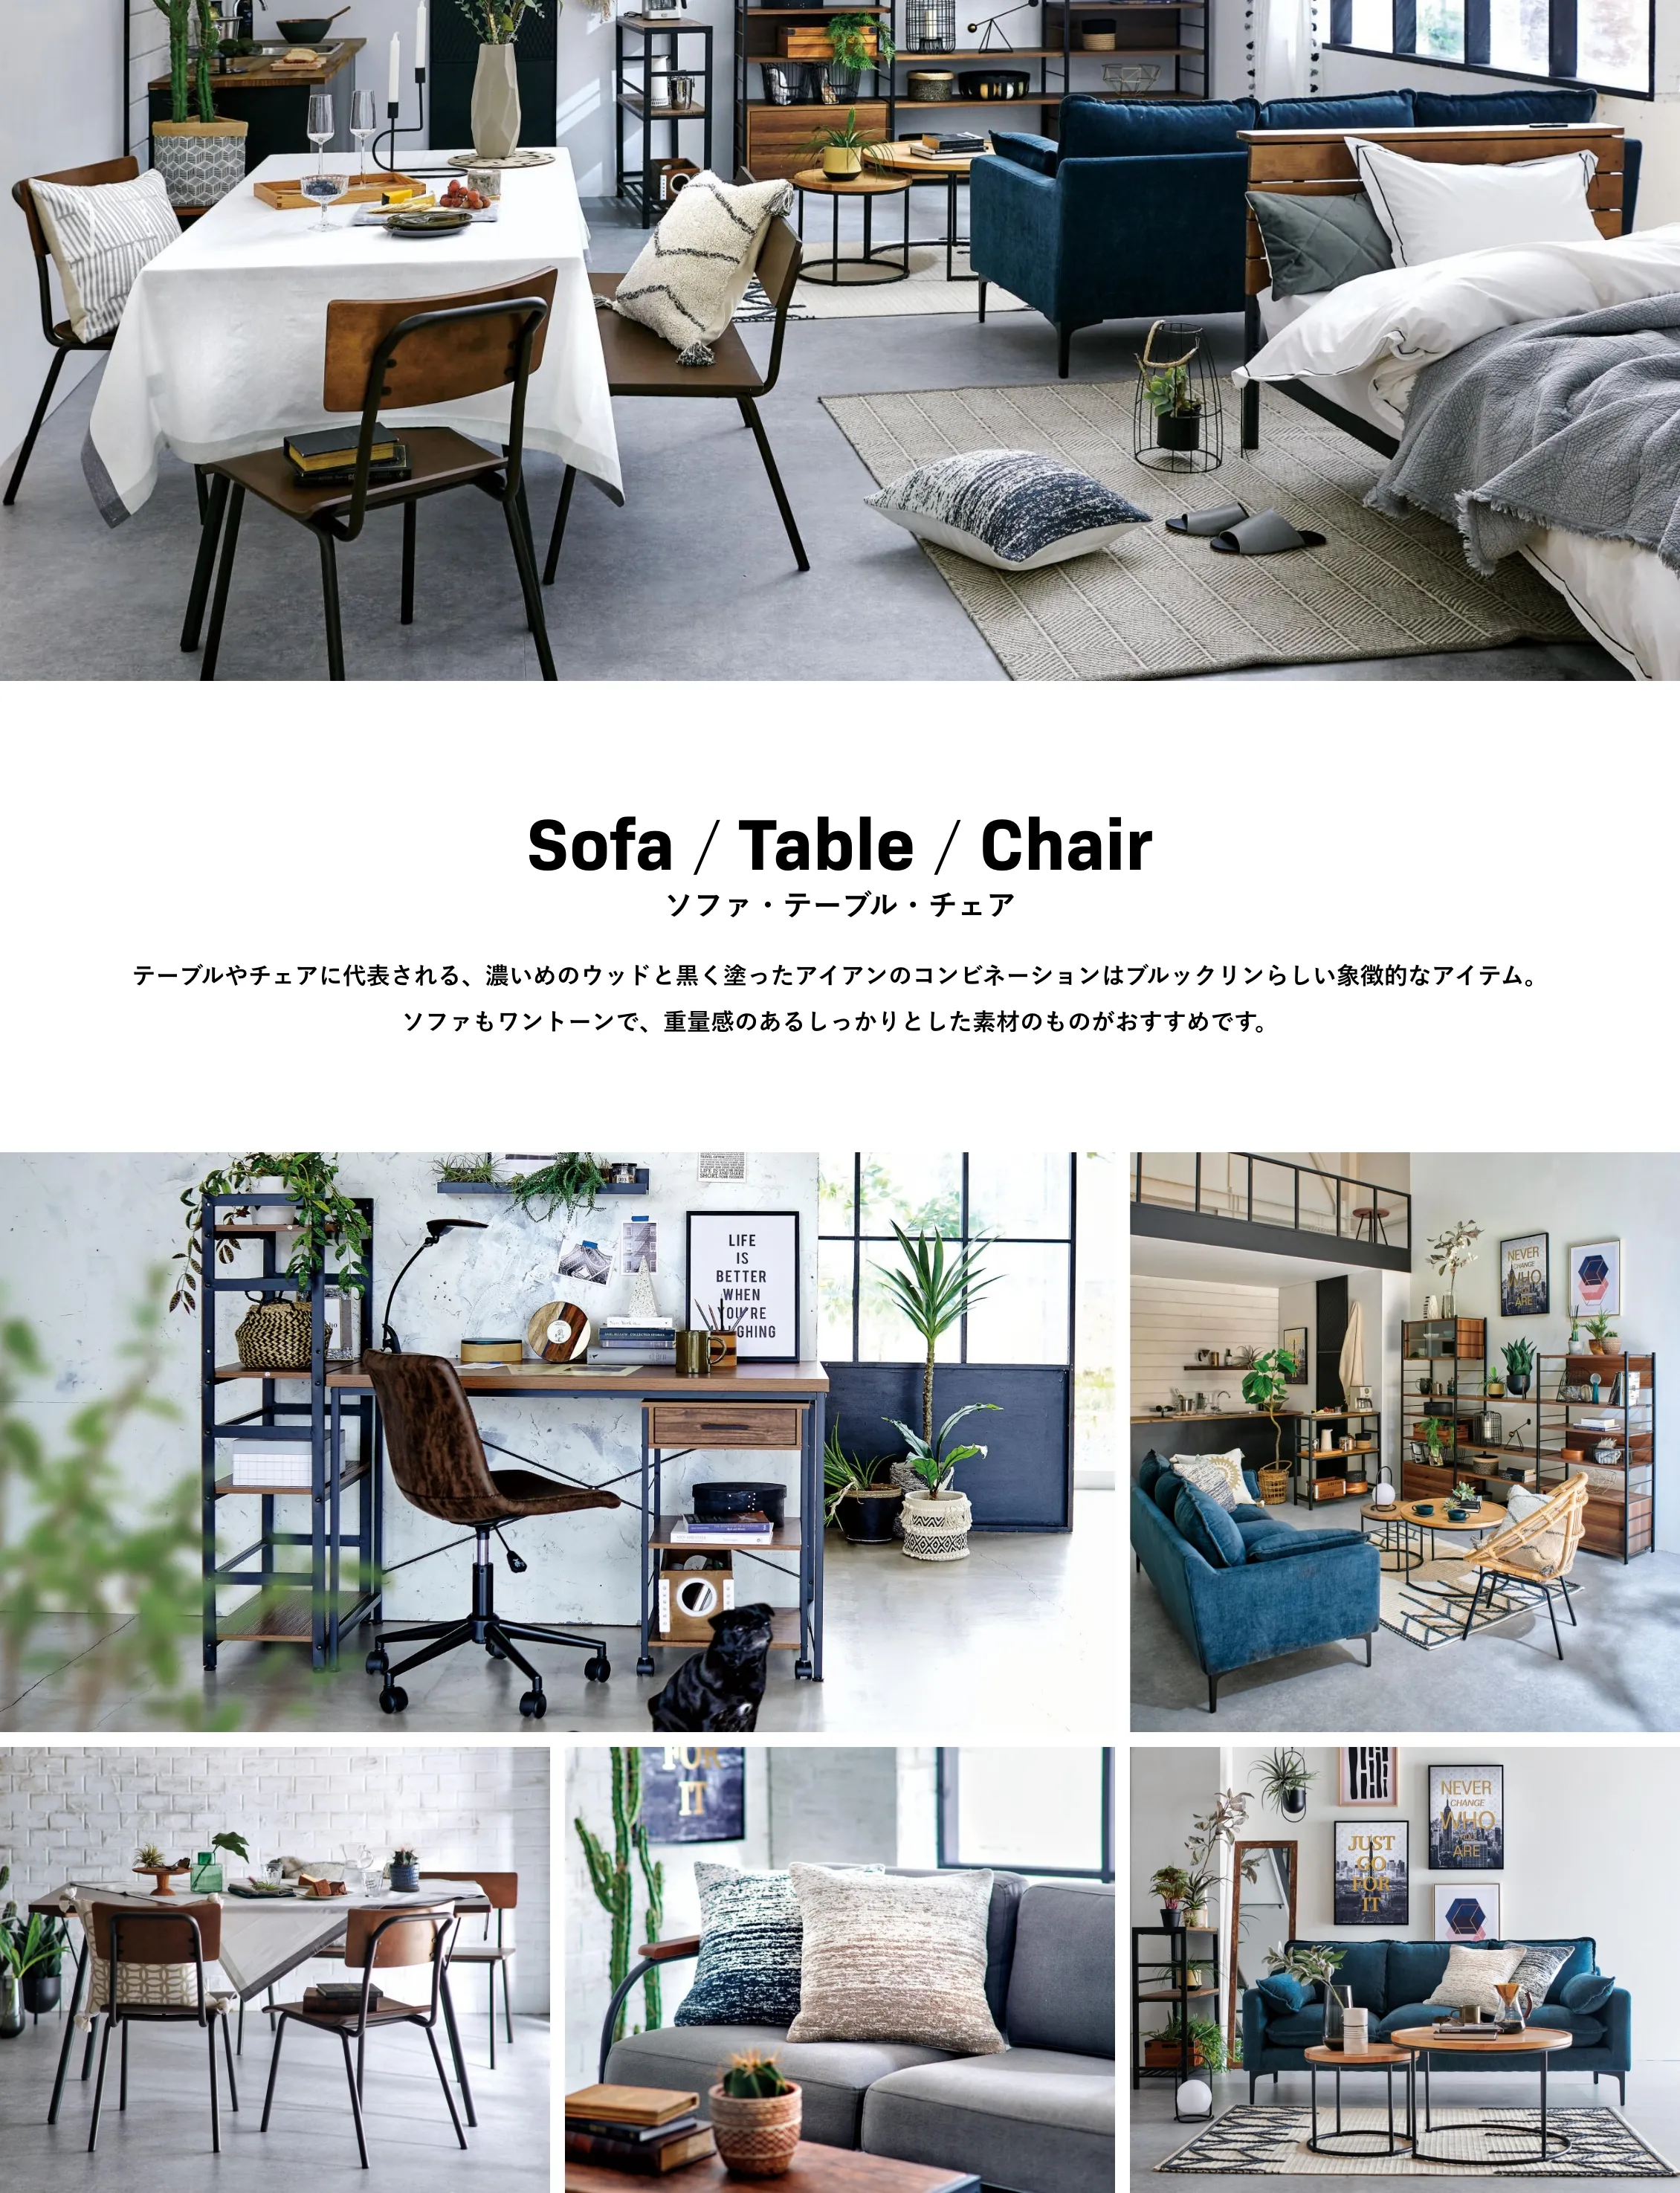 Sofa / Table / Chair ソファ・テーブル・チェア テーブルやチェアに代表される、濃いめのウッドと黒く塗ったアイアンのコンビネーションはブルックリンらしい象徴的なアイテム。ソファもワントーンで、重量感のあるしっかりとした素材のものがおすすめです。